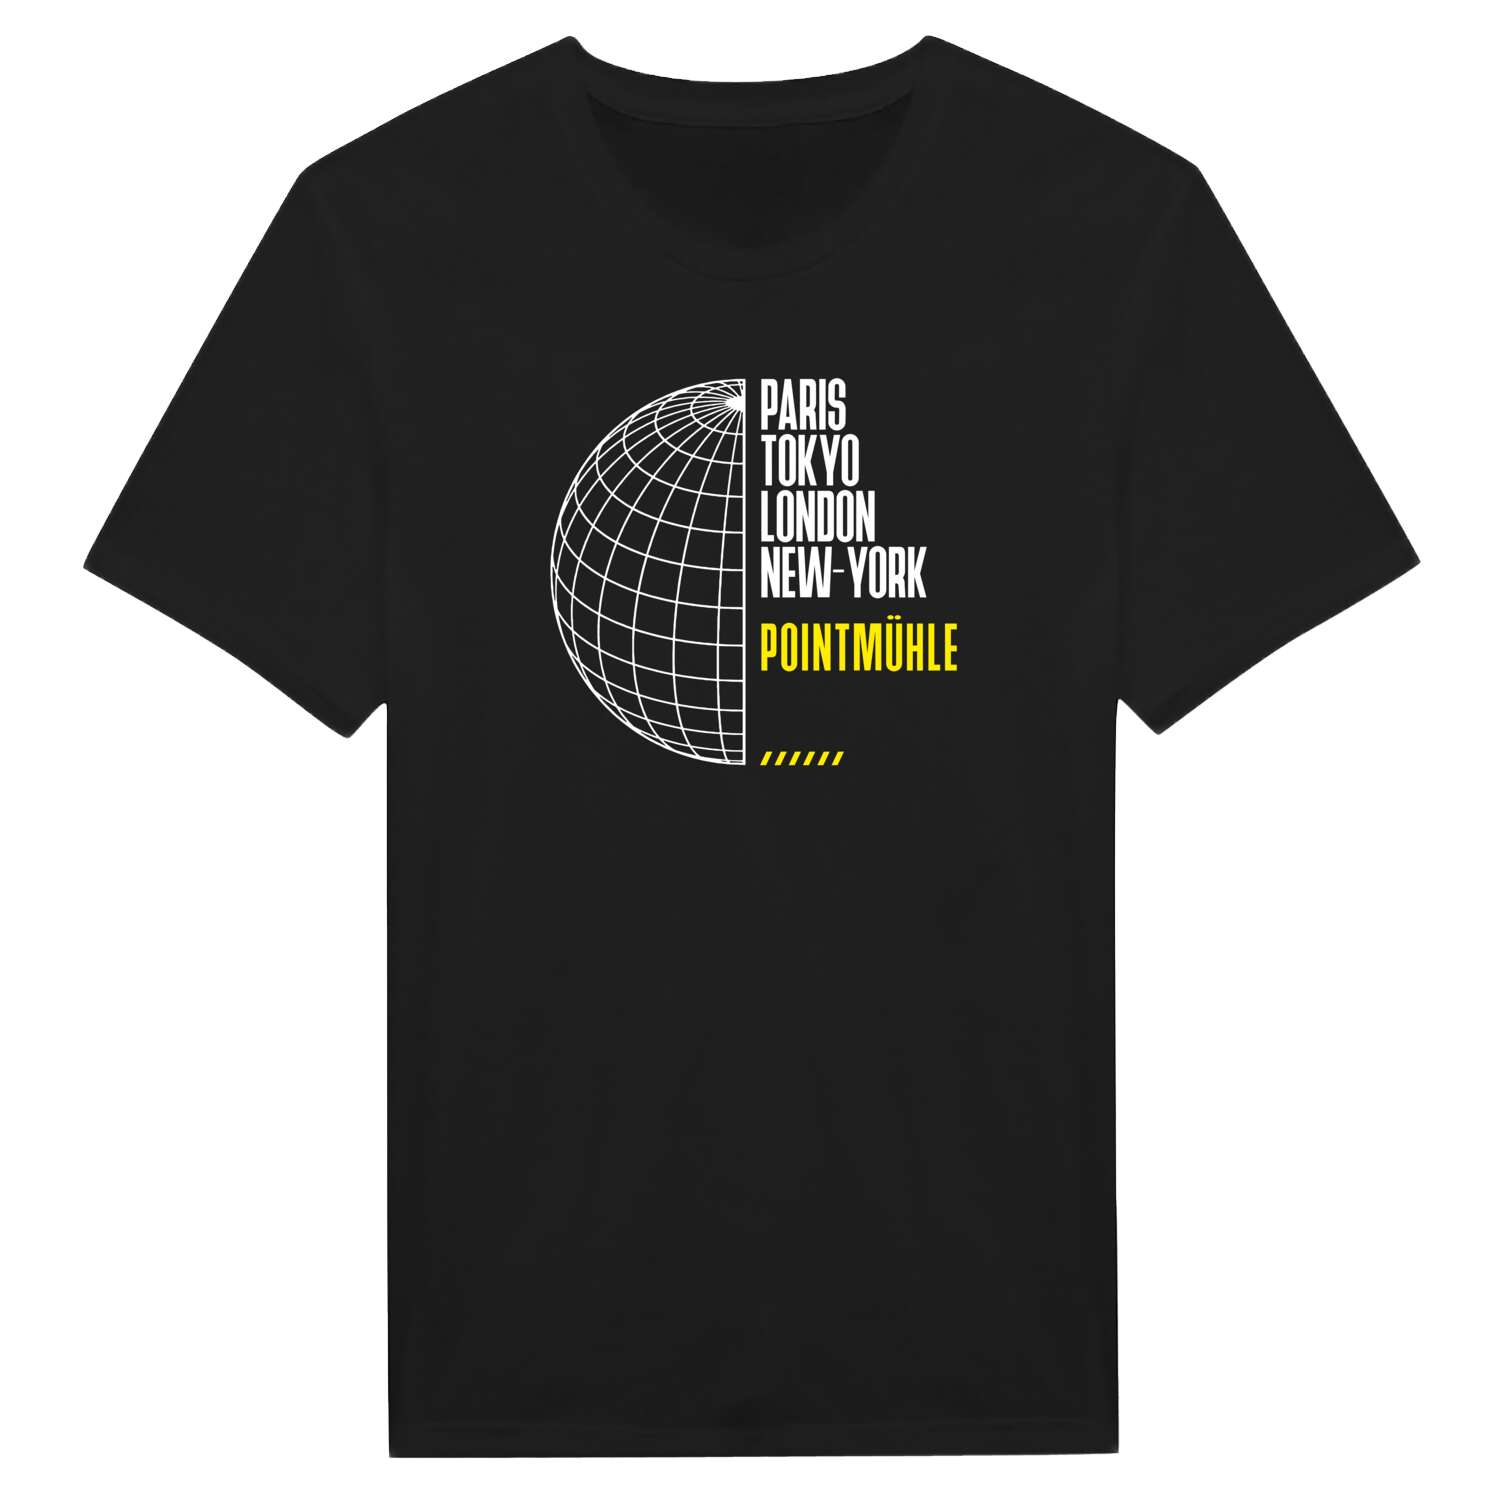 Pointmühle T-Shirt »Paris Tokyo London«